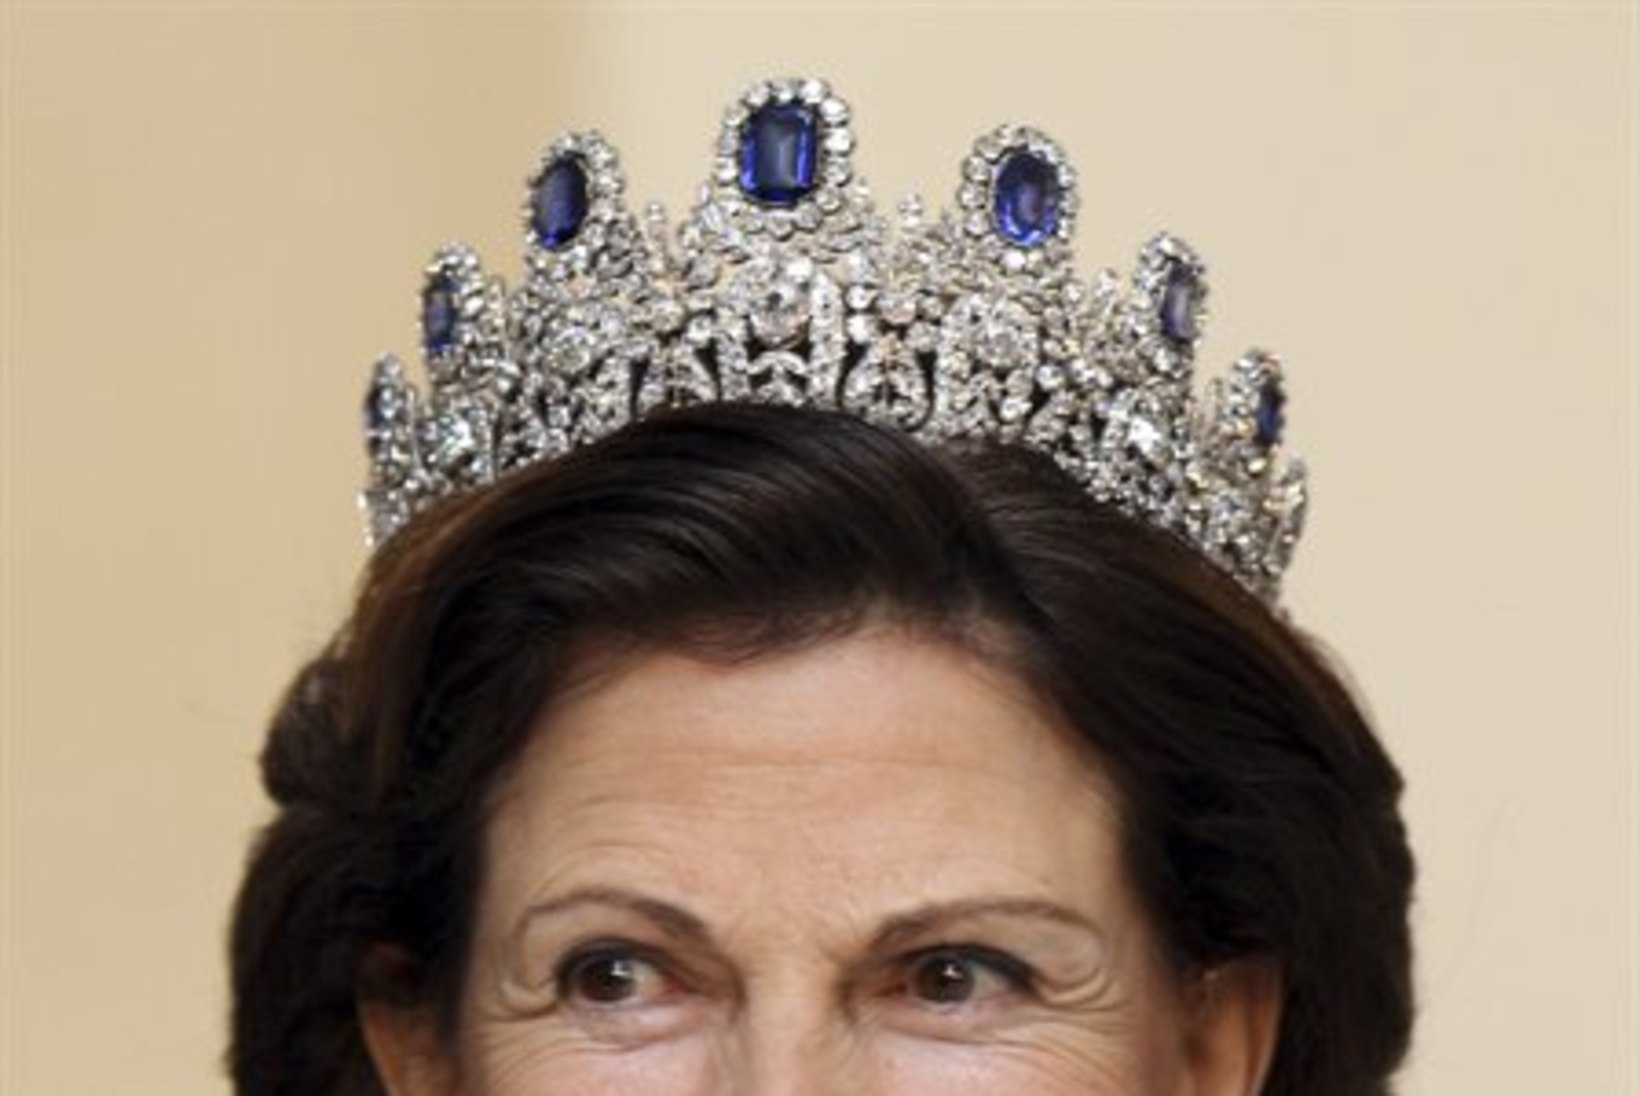 Taani kuninganna peol särasid kroonitud pead